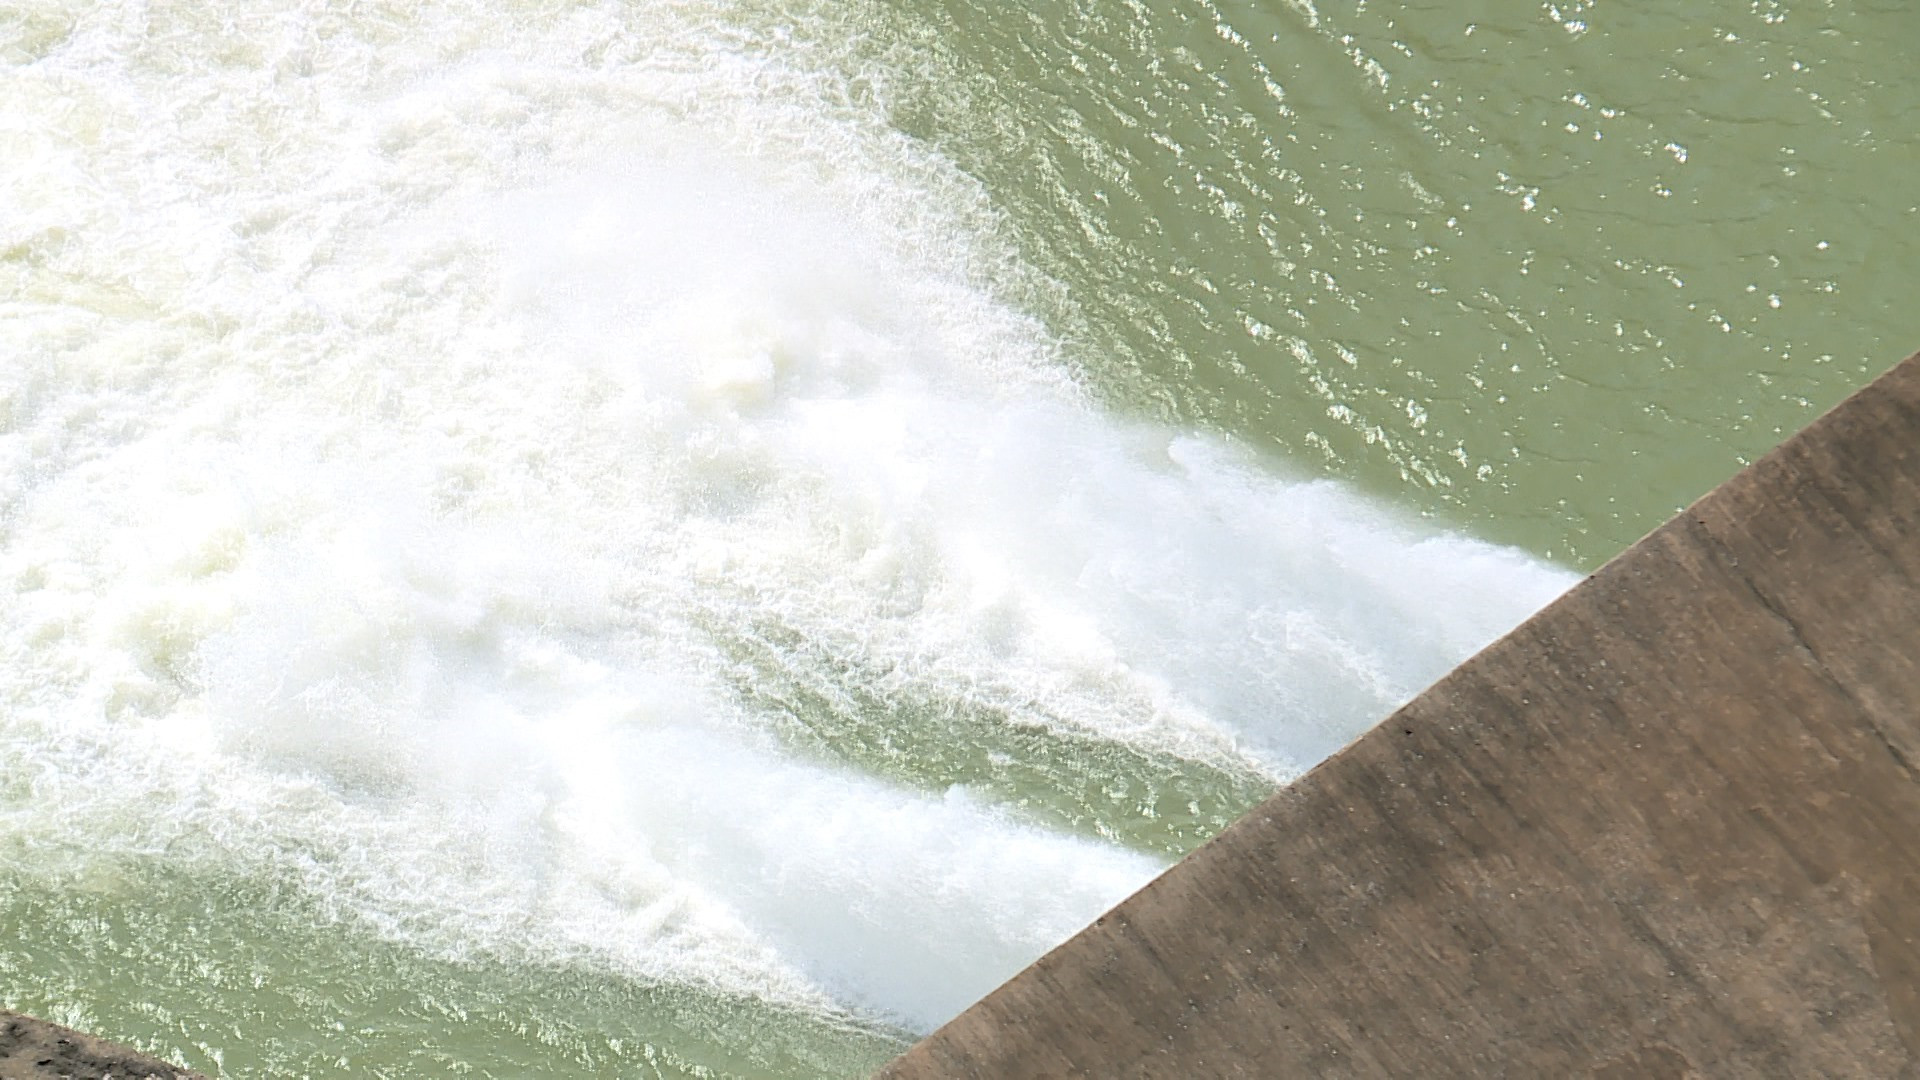 Thủy điện Sông Tranh 2 đang điều tiết xả cấp nước cho hạ du với lưu lượng tối thiểu 62m3/s